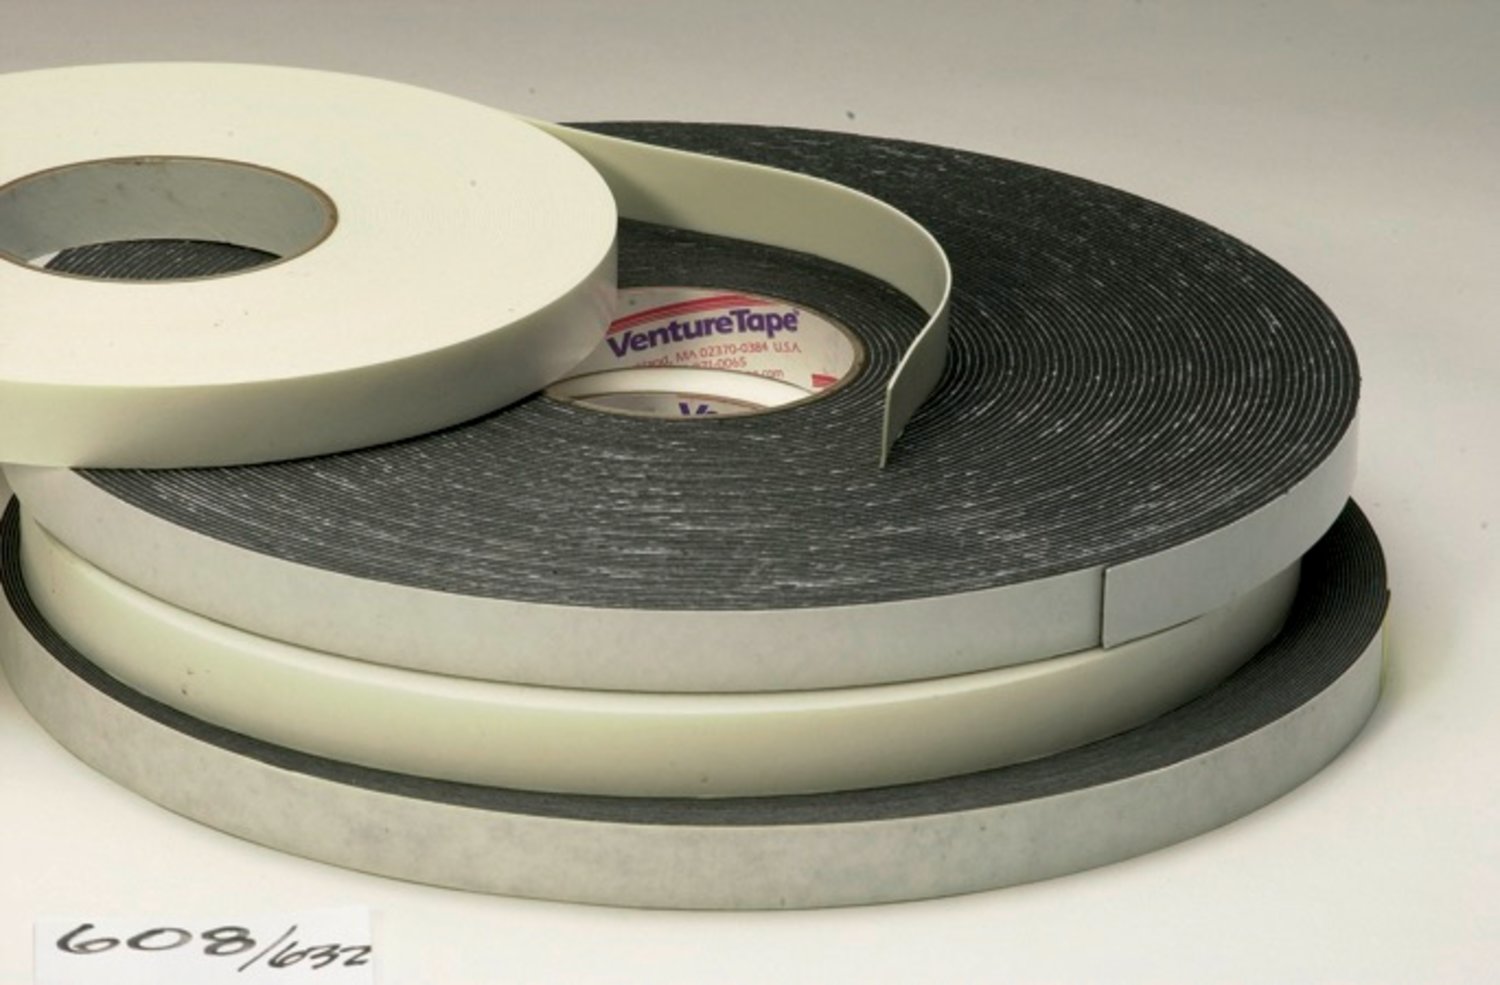 7010337458 - 3M Venture Tape Double Sided Polyethylene Foam Glazing Tape VG1208,
Black, 1/2 in x 85 ft, 125 mil, 40 rolls per case